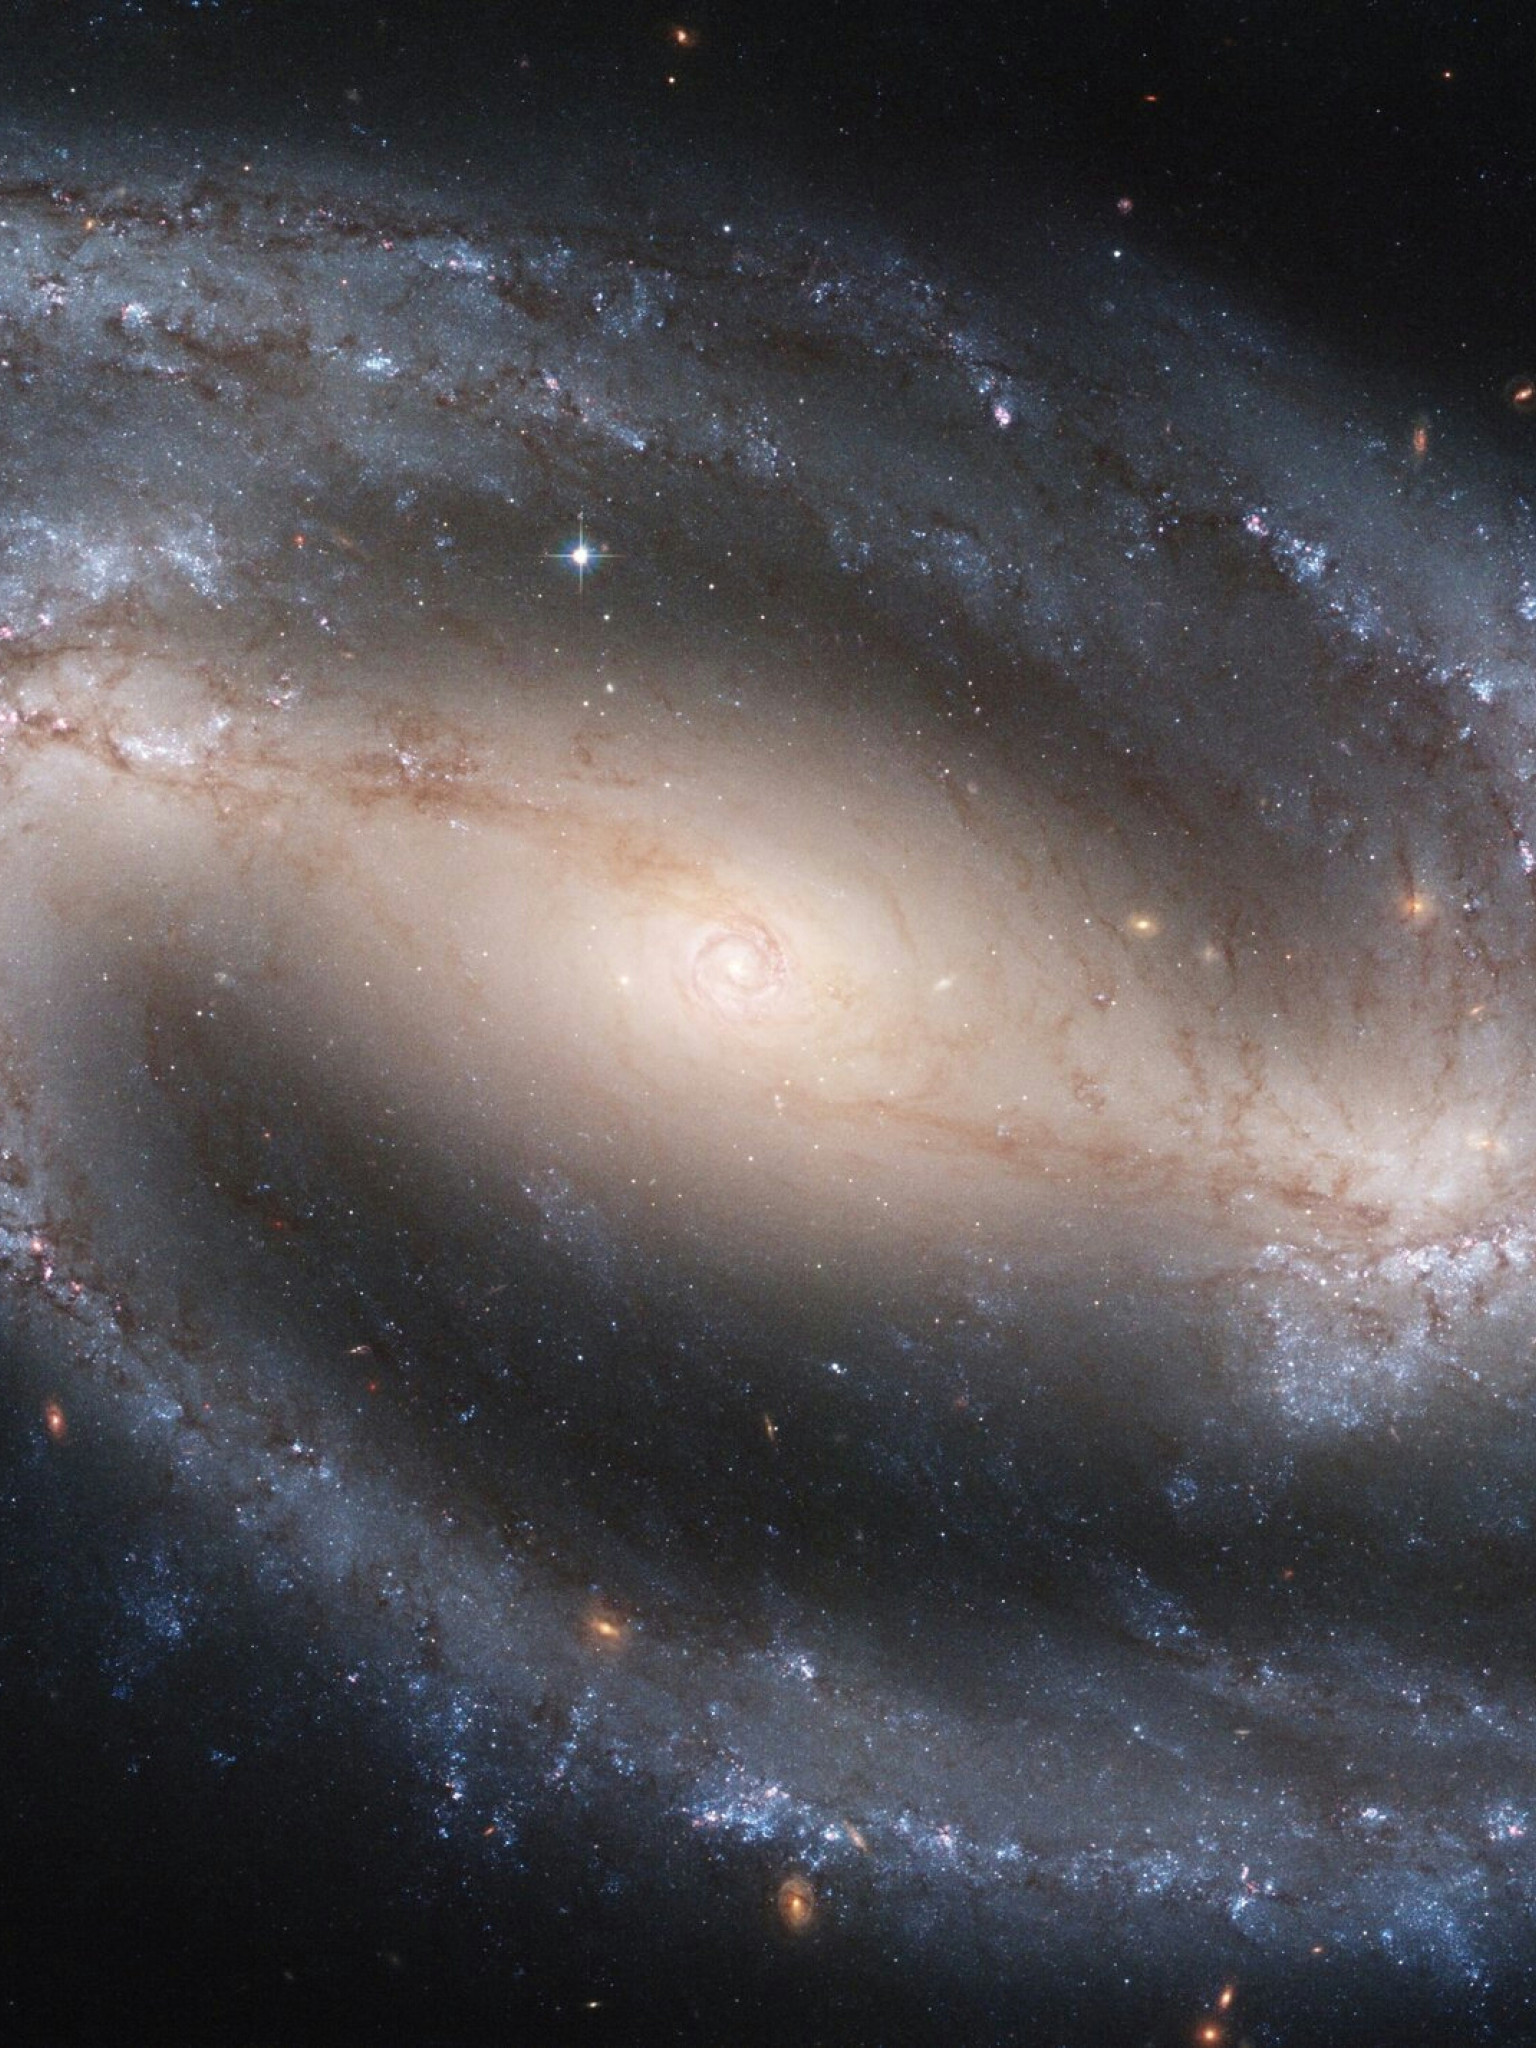 Galaktyka spiralna